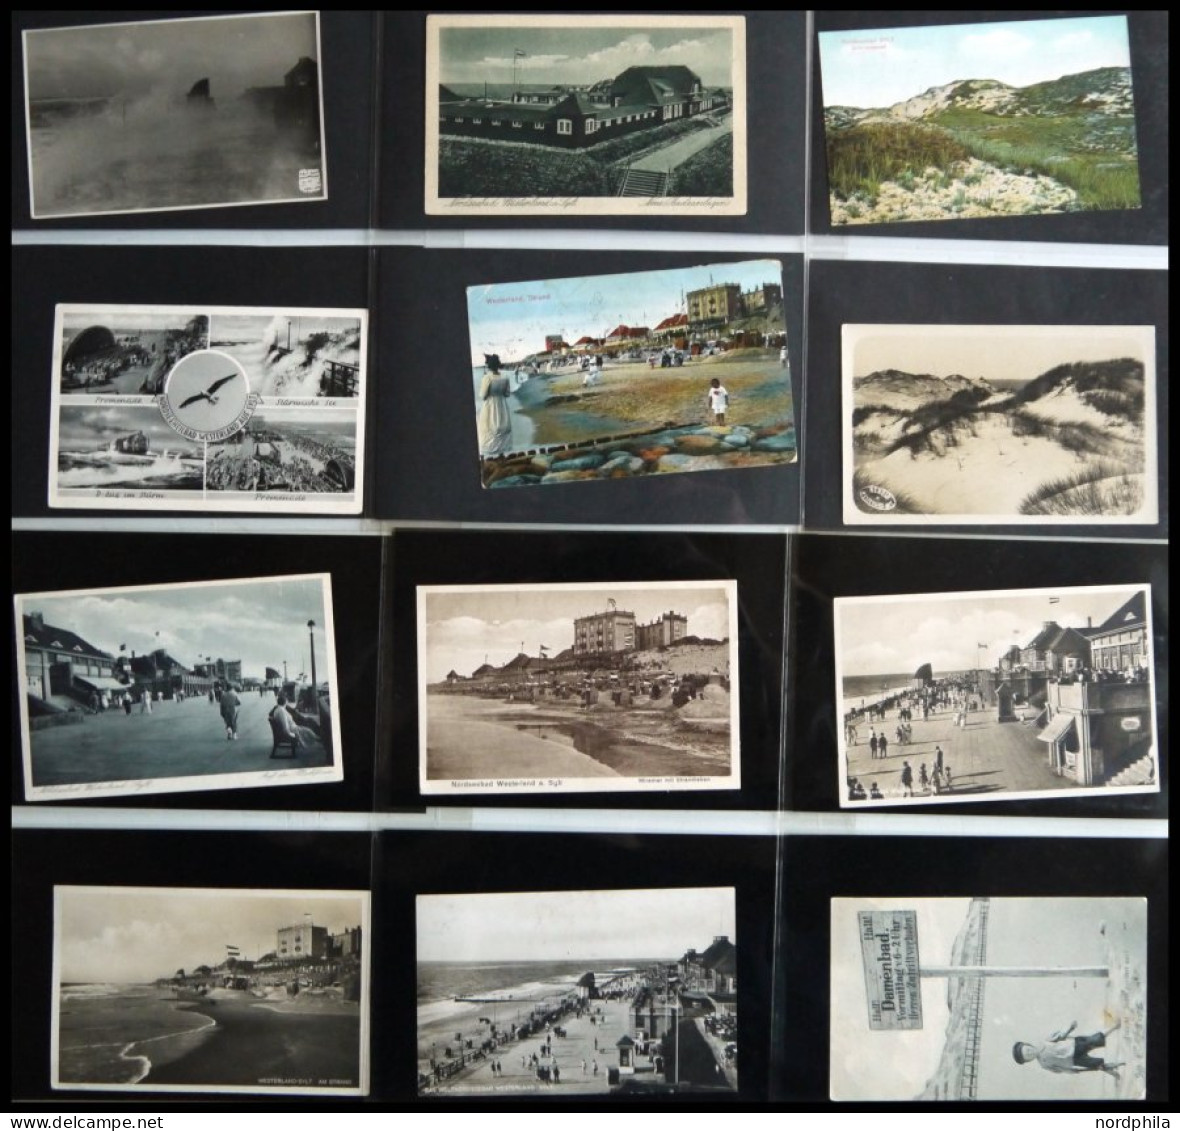 DEUTSCHLAND ETC. SYLT - Westerland, Sammlung von 100 verschiedenen Ansichtskarten im Briefalbum, dabei Gruß aus-Karten, 